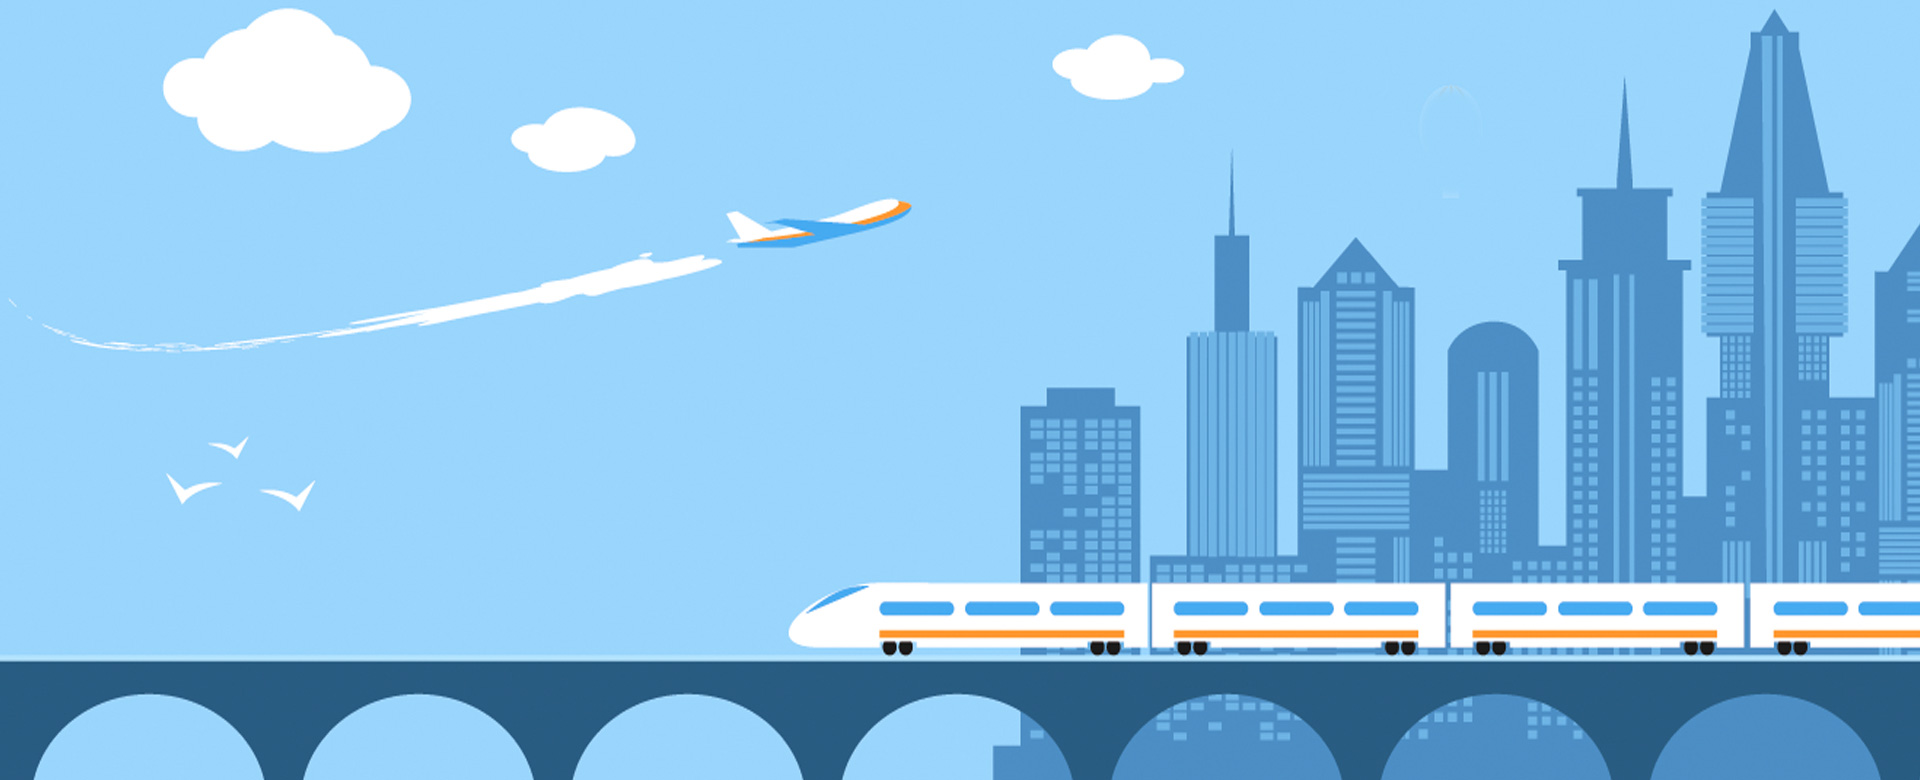 Illustrazione grafica con treno e aereo